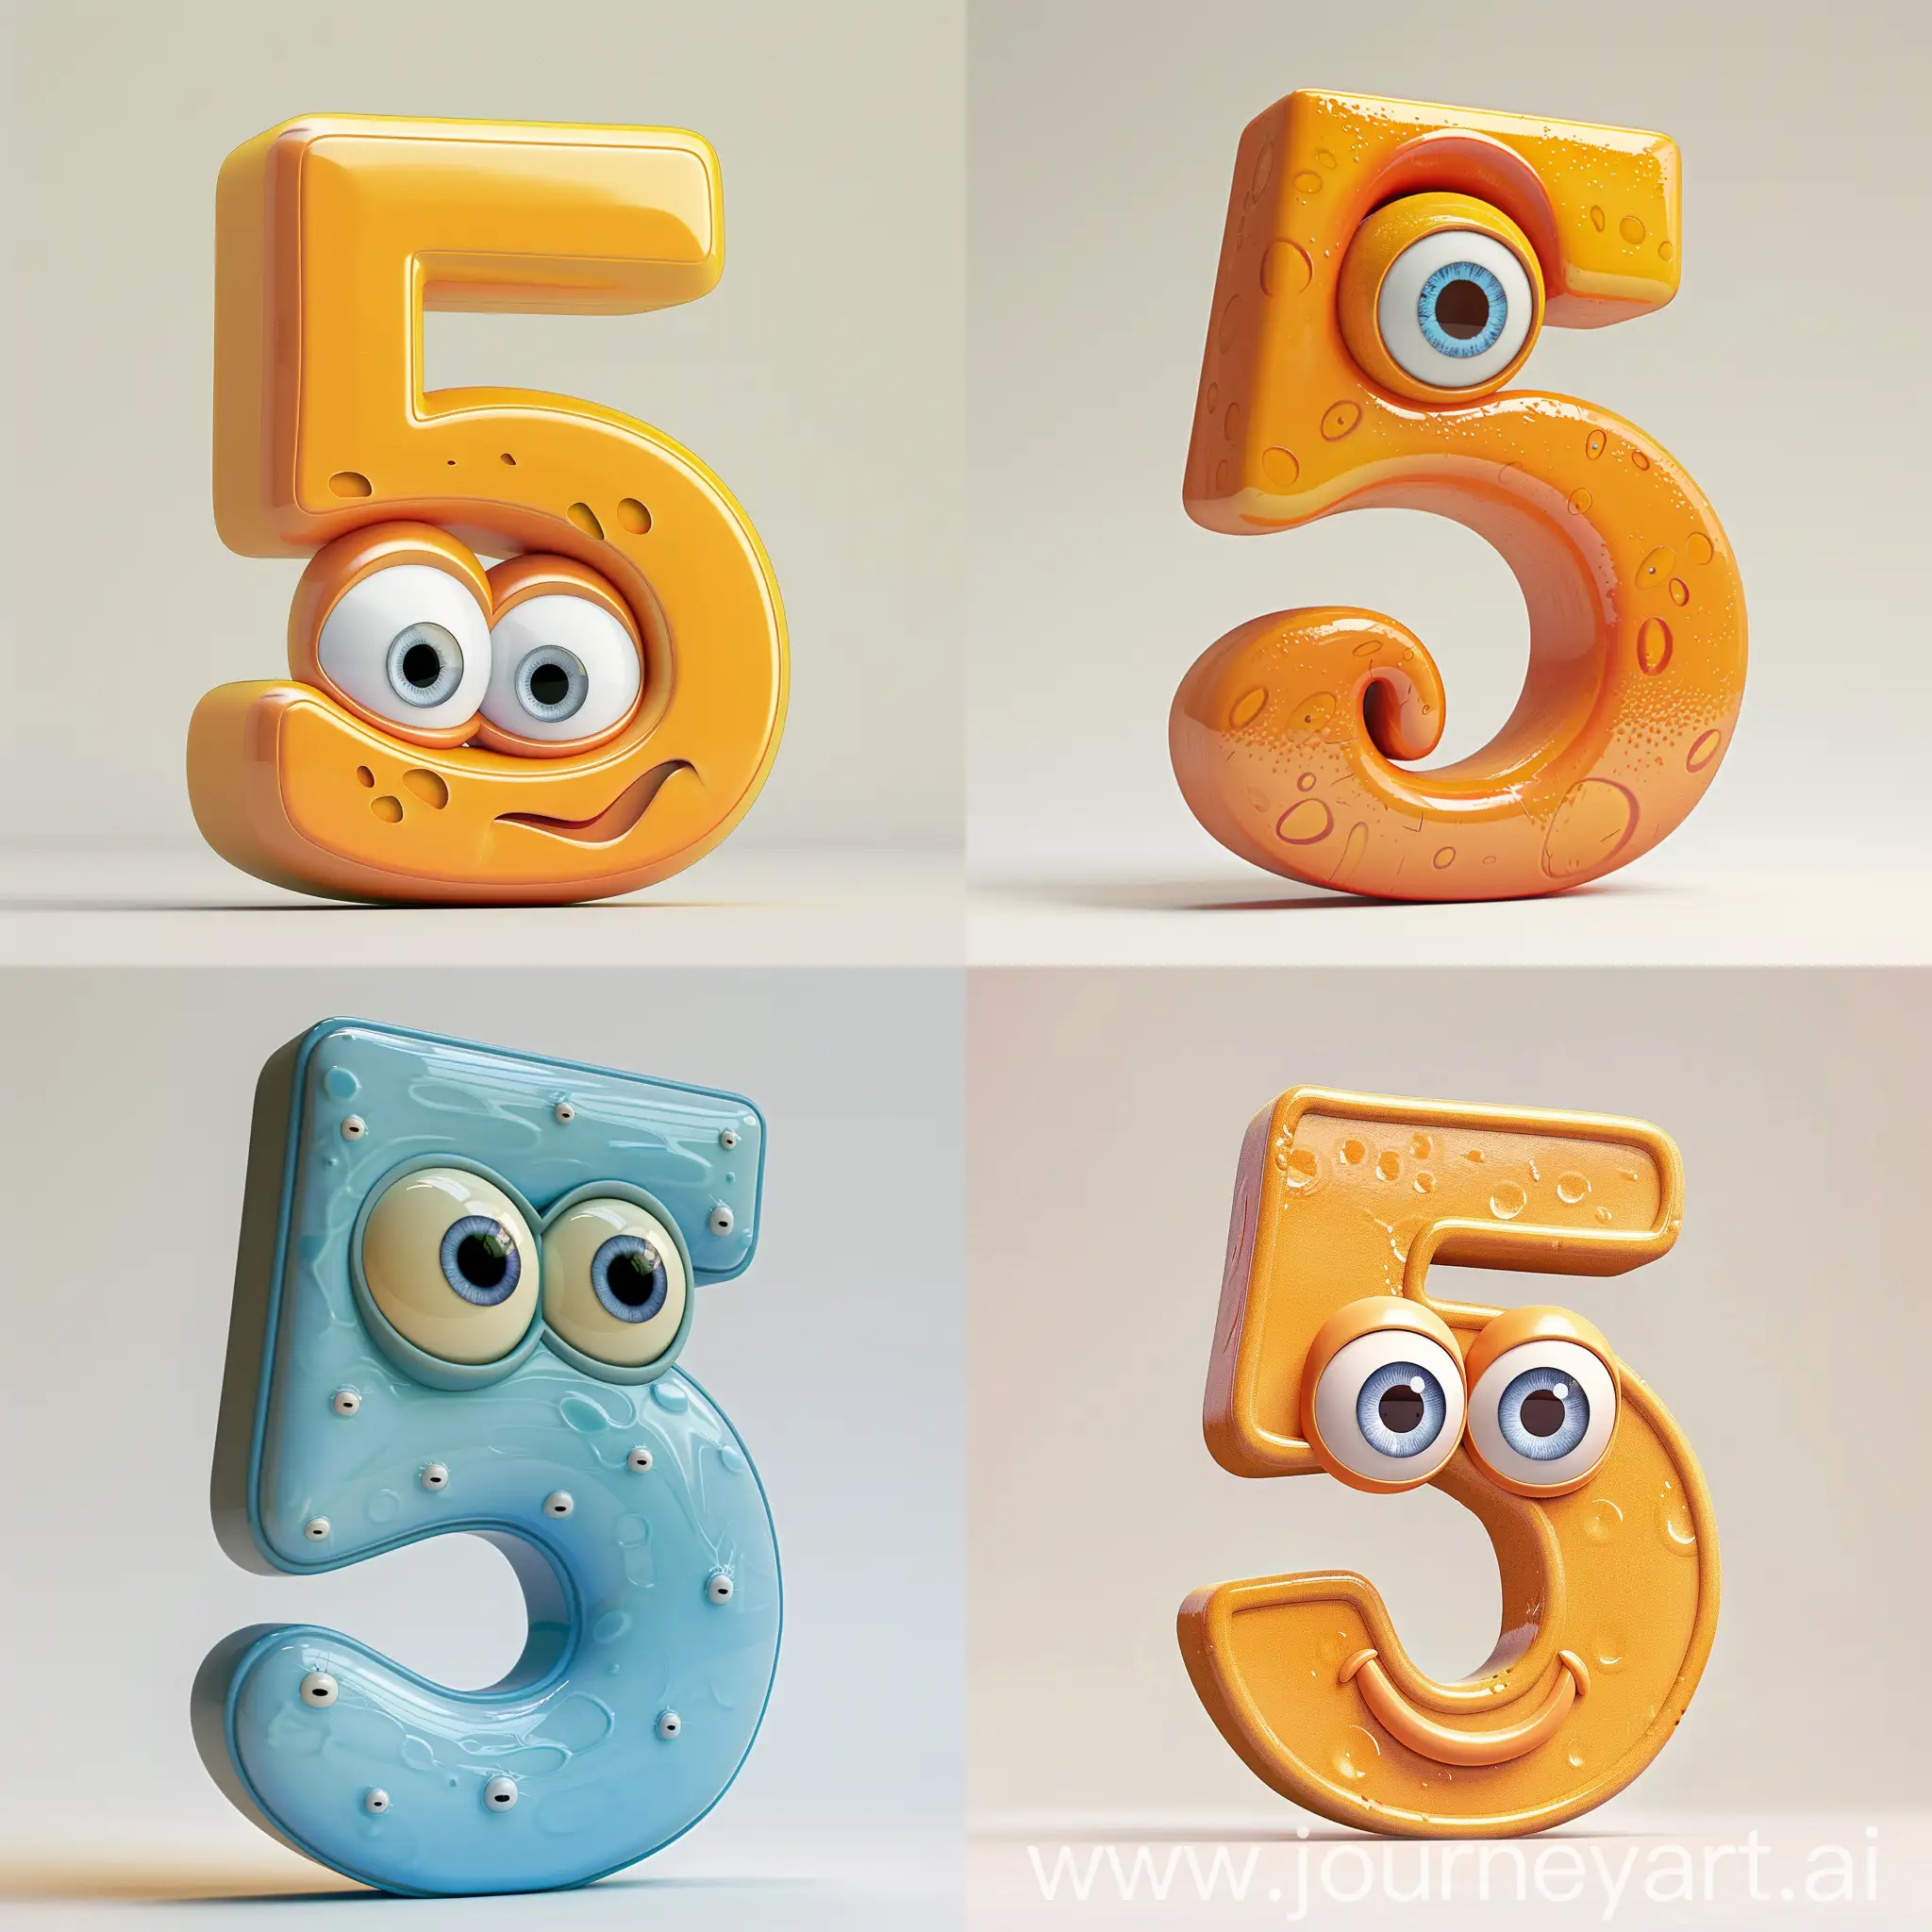 цифра пять  вид сбоку большими глазами симметричный анимация pixar на светлом фоне

